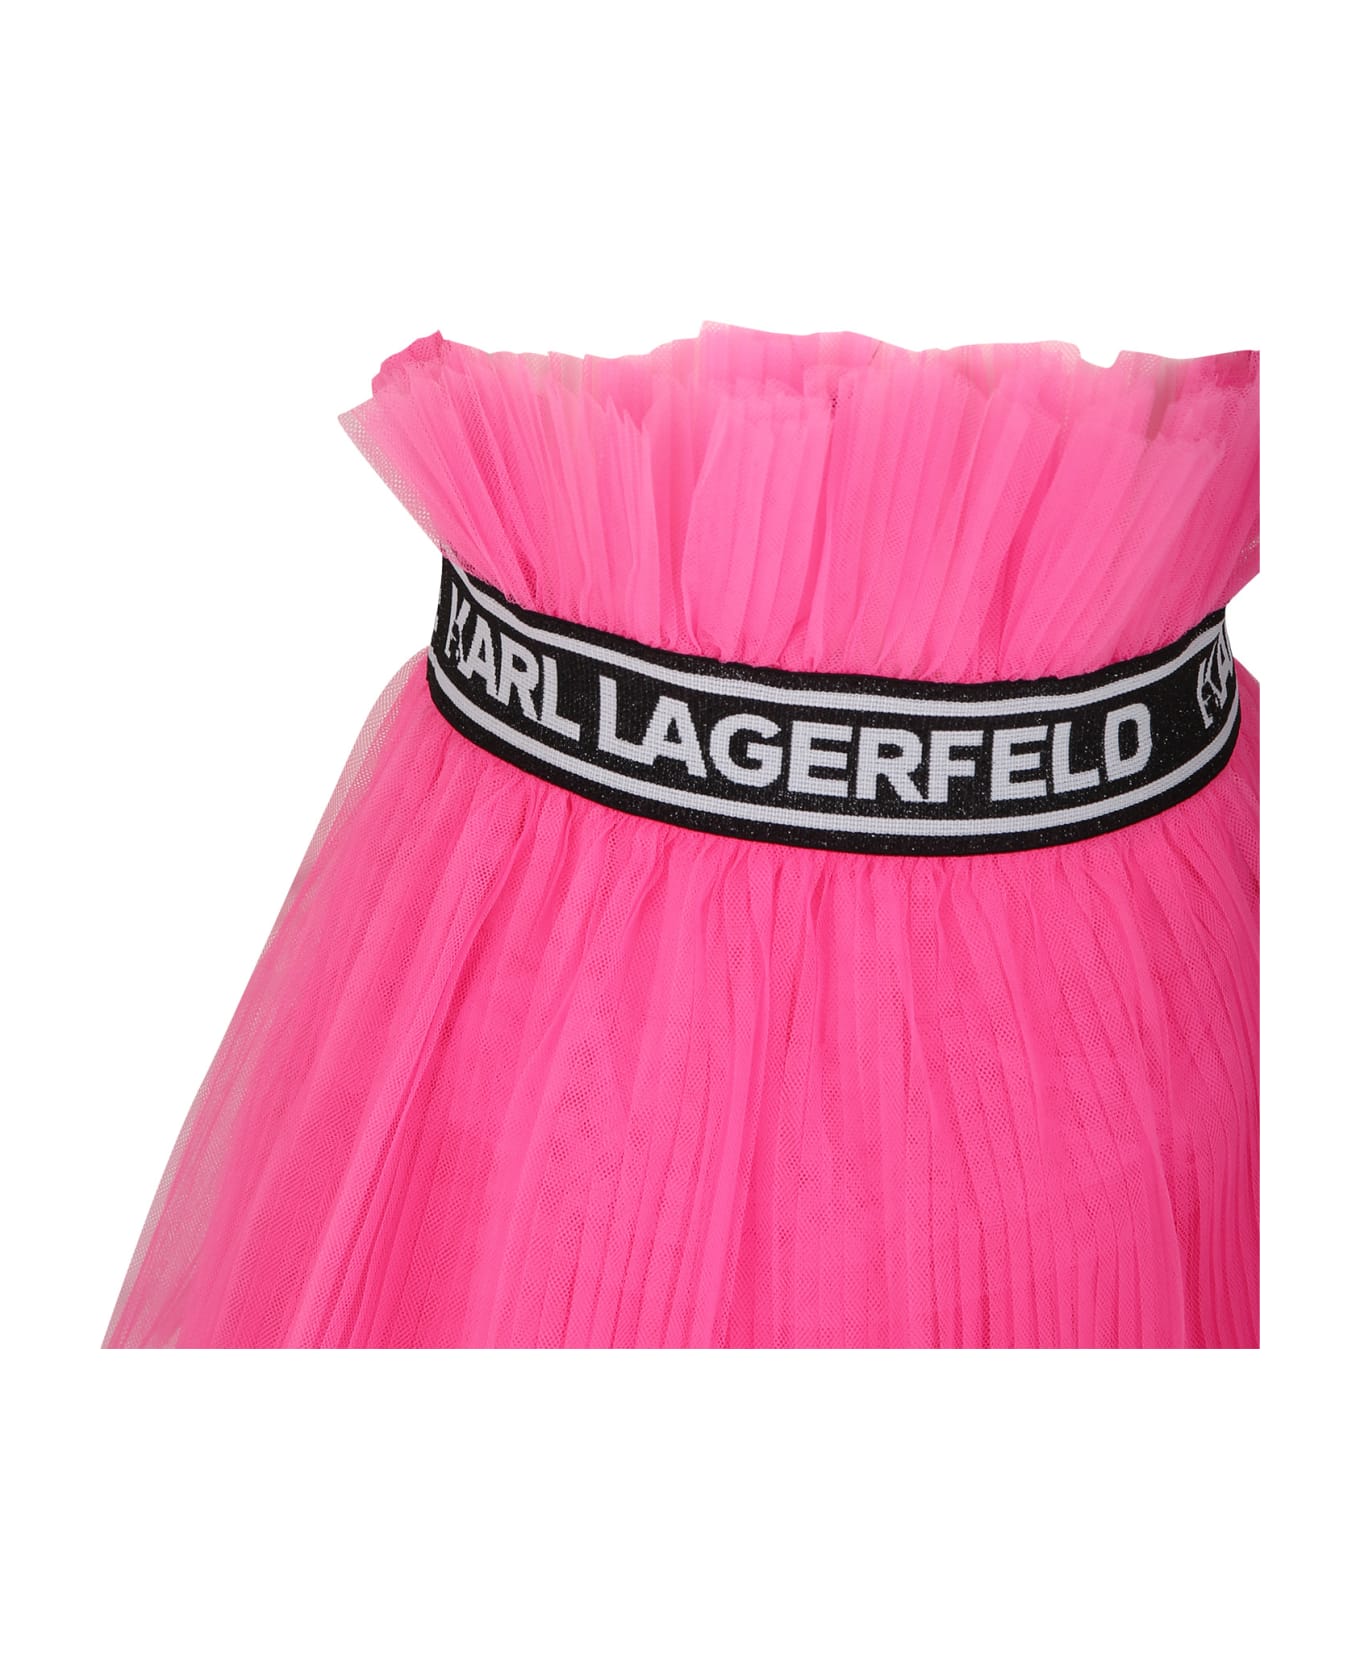 Karl Lagerfeld Kids Elegant Fuchsia Skirt For Girl - Fuchsia